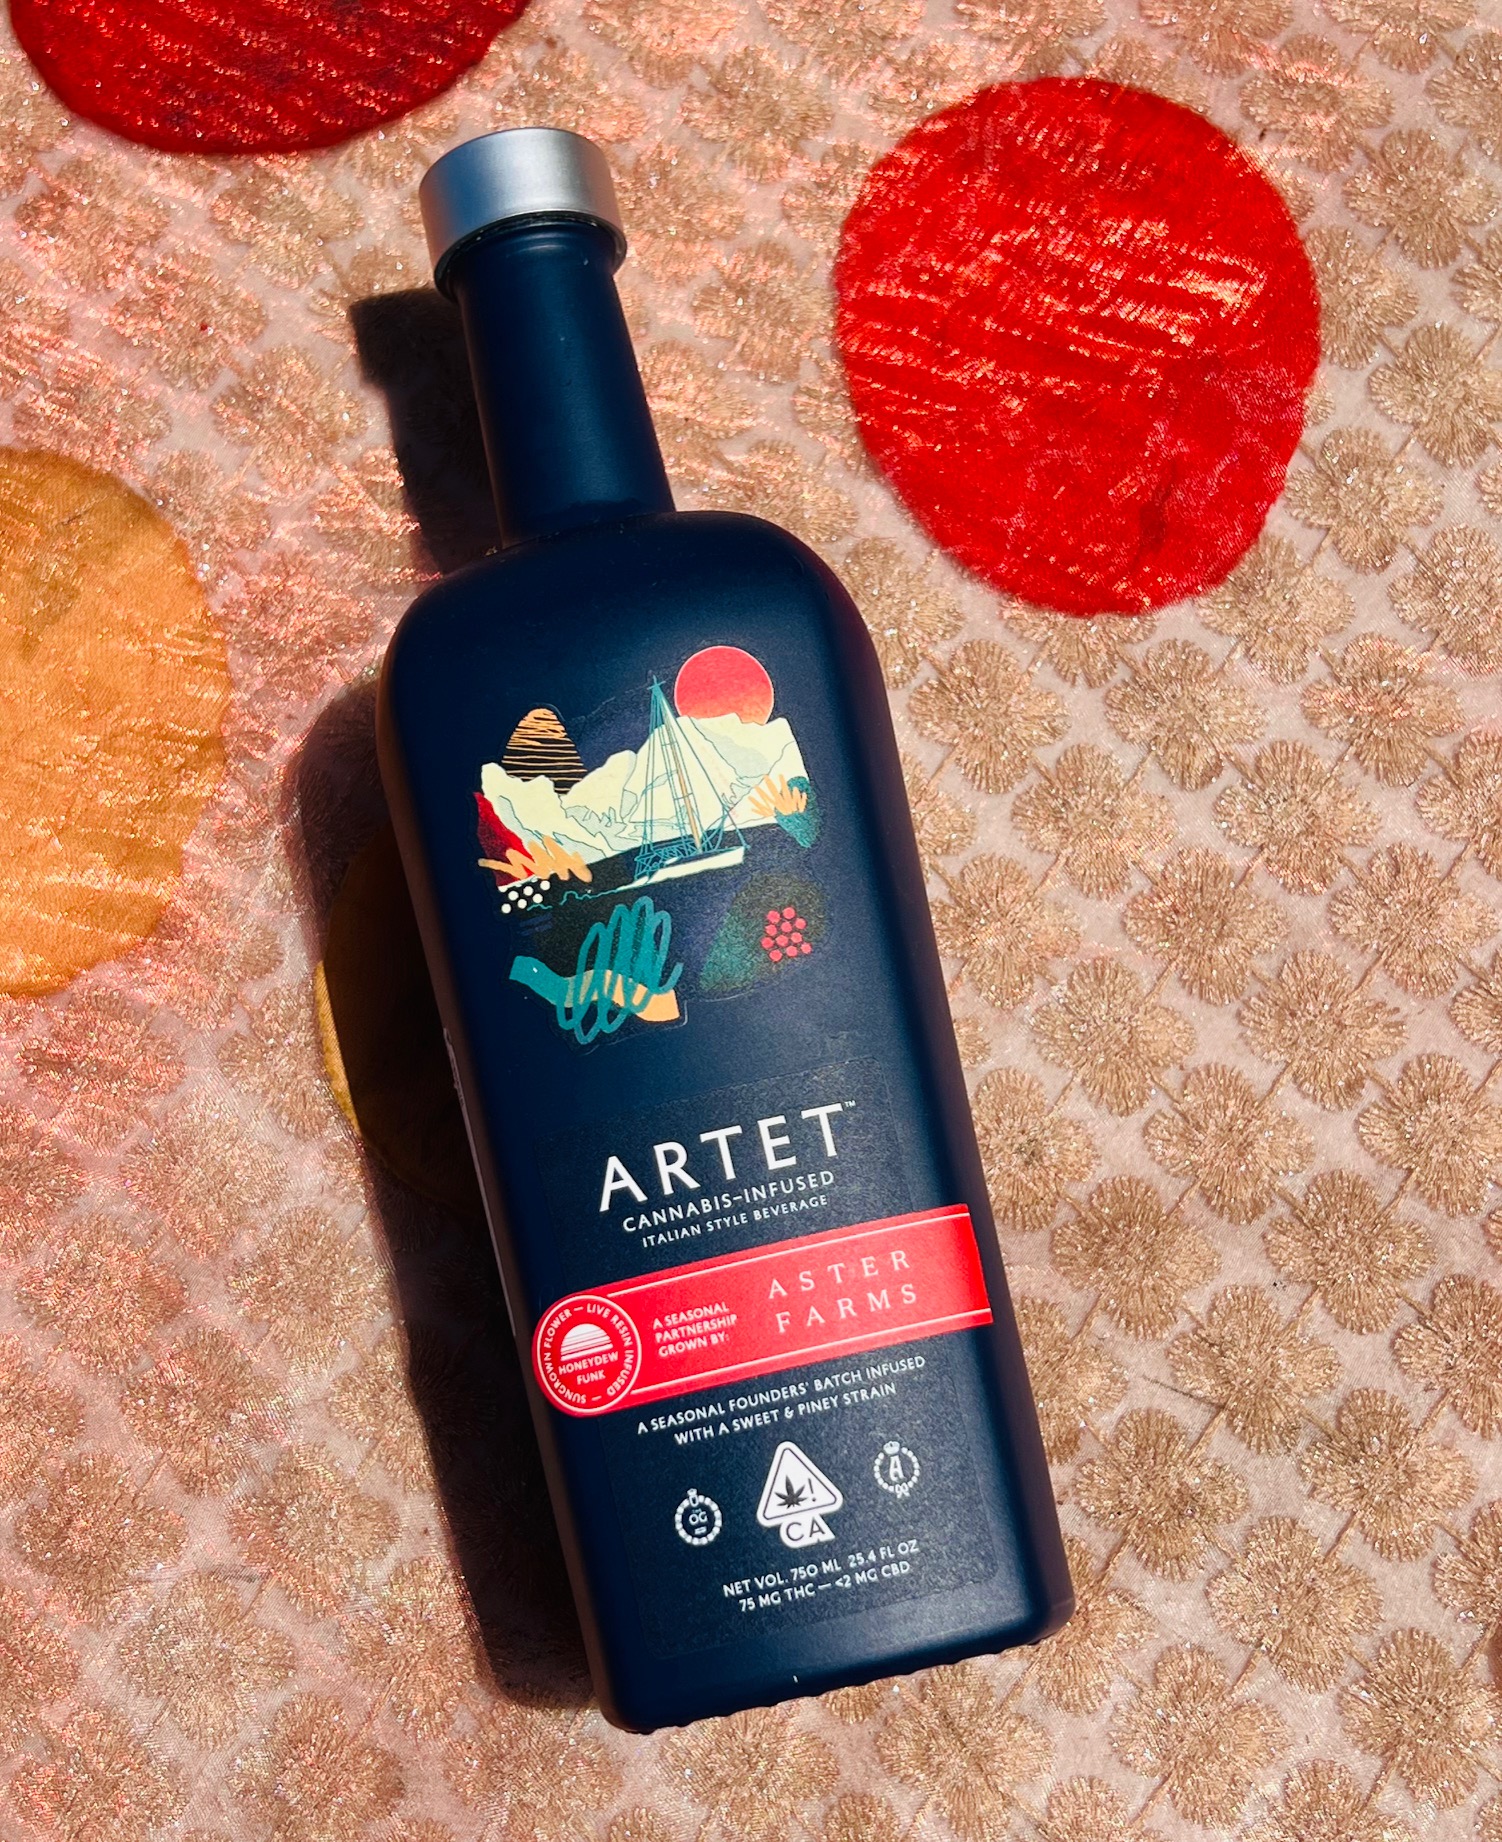 Artet x Aster Farms Founder's Blend